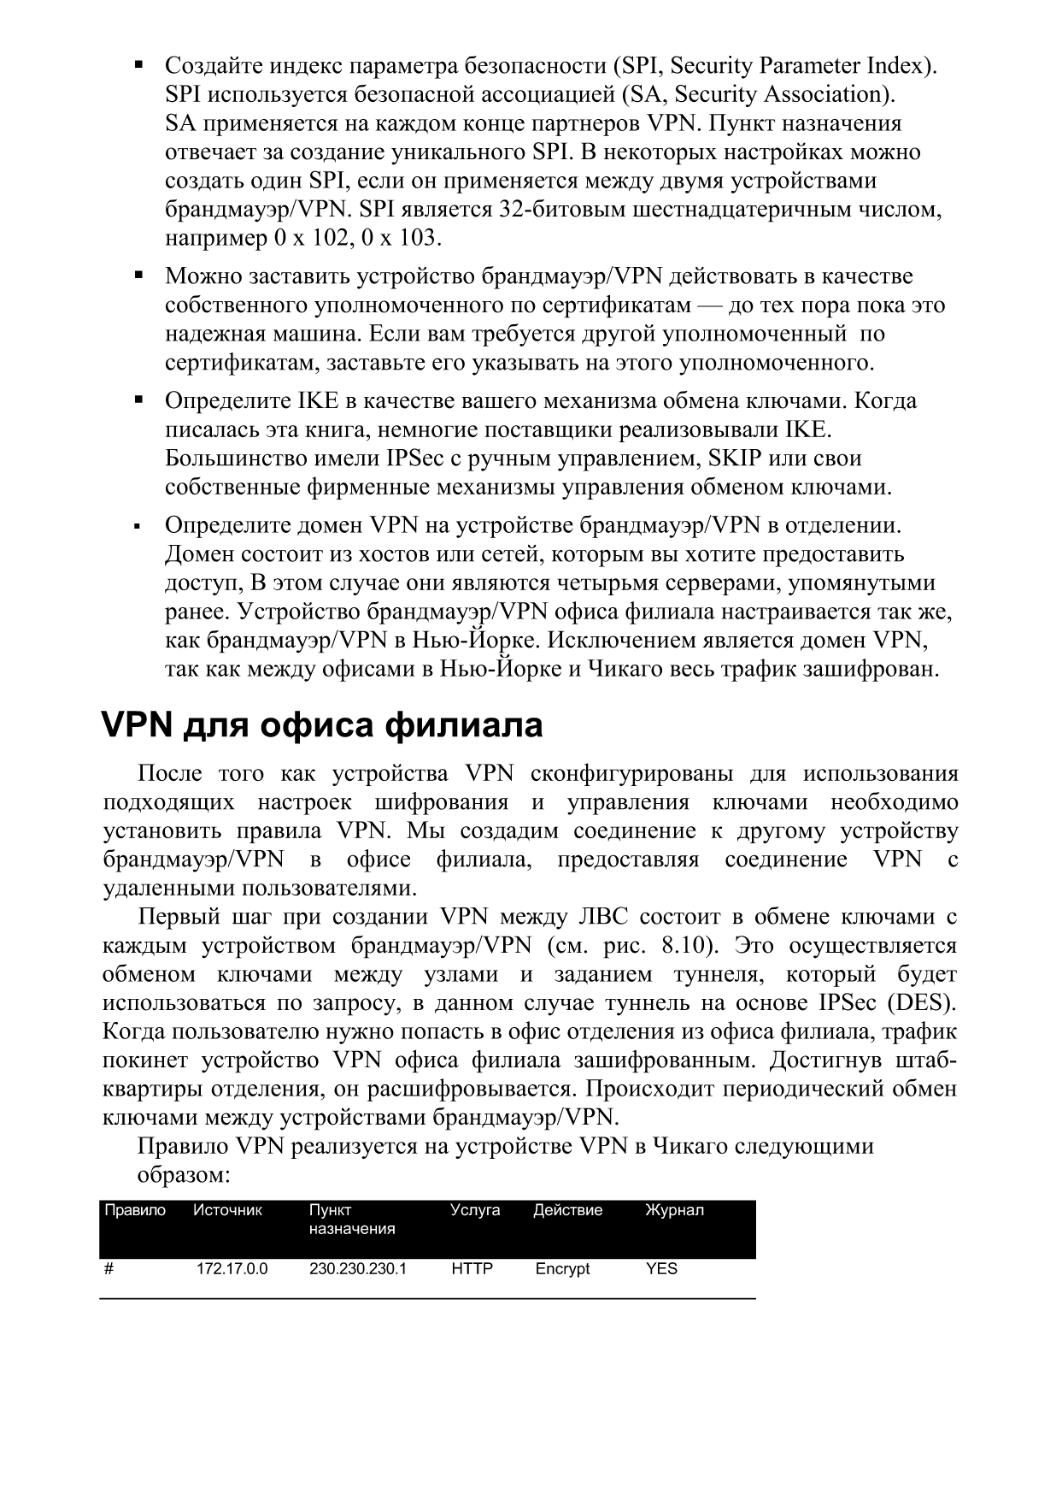 VPN для офиса филиала